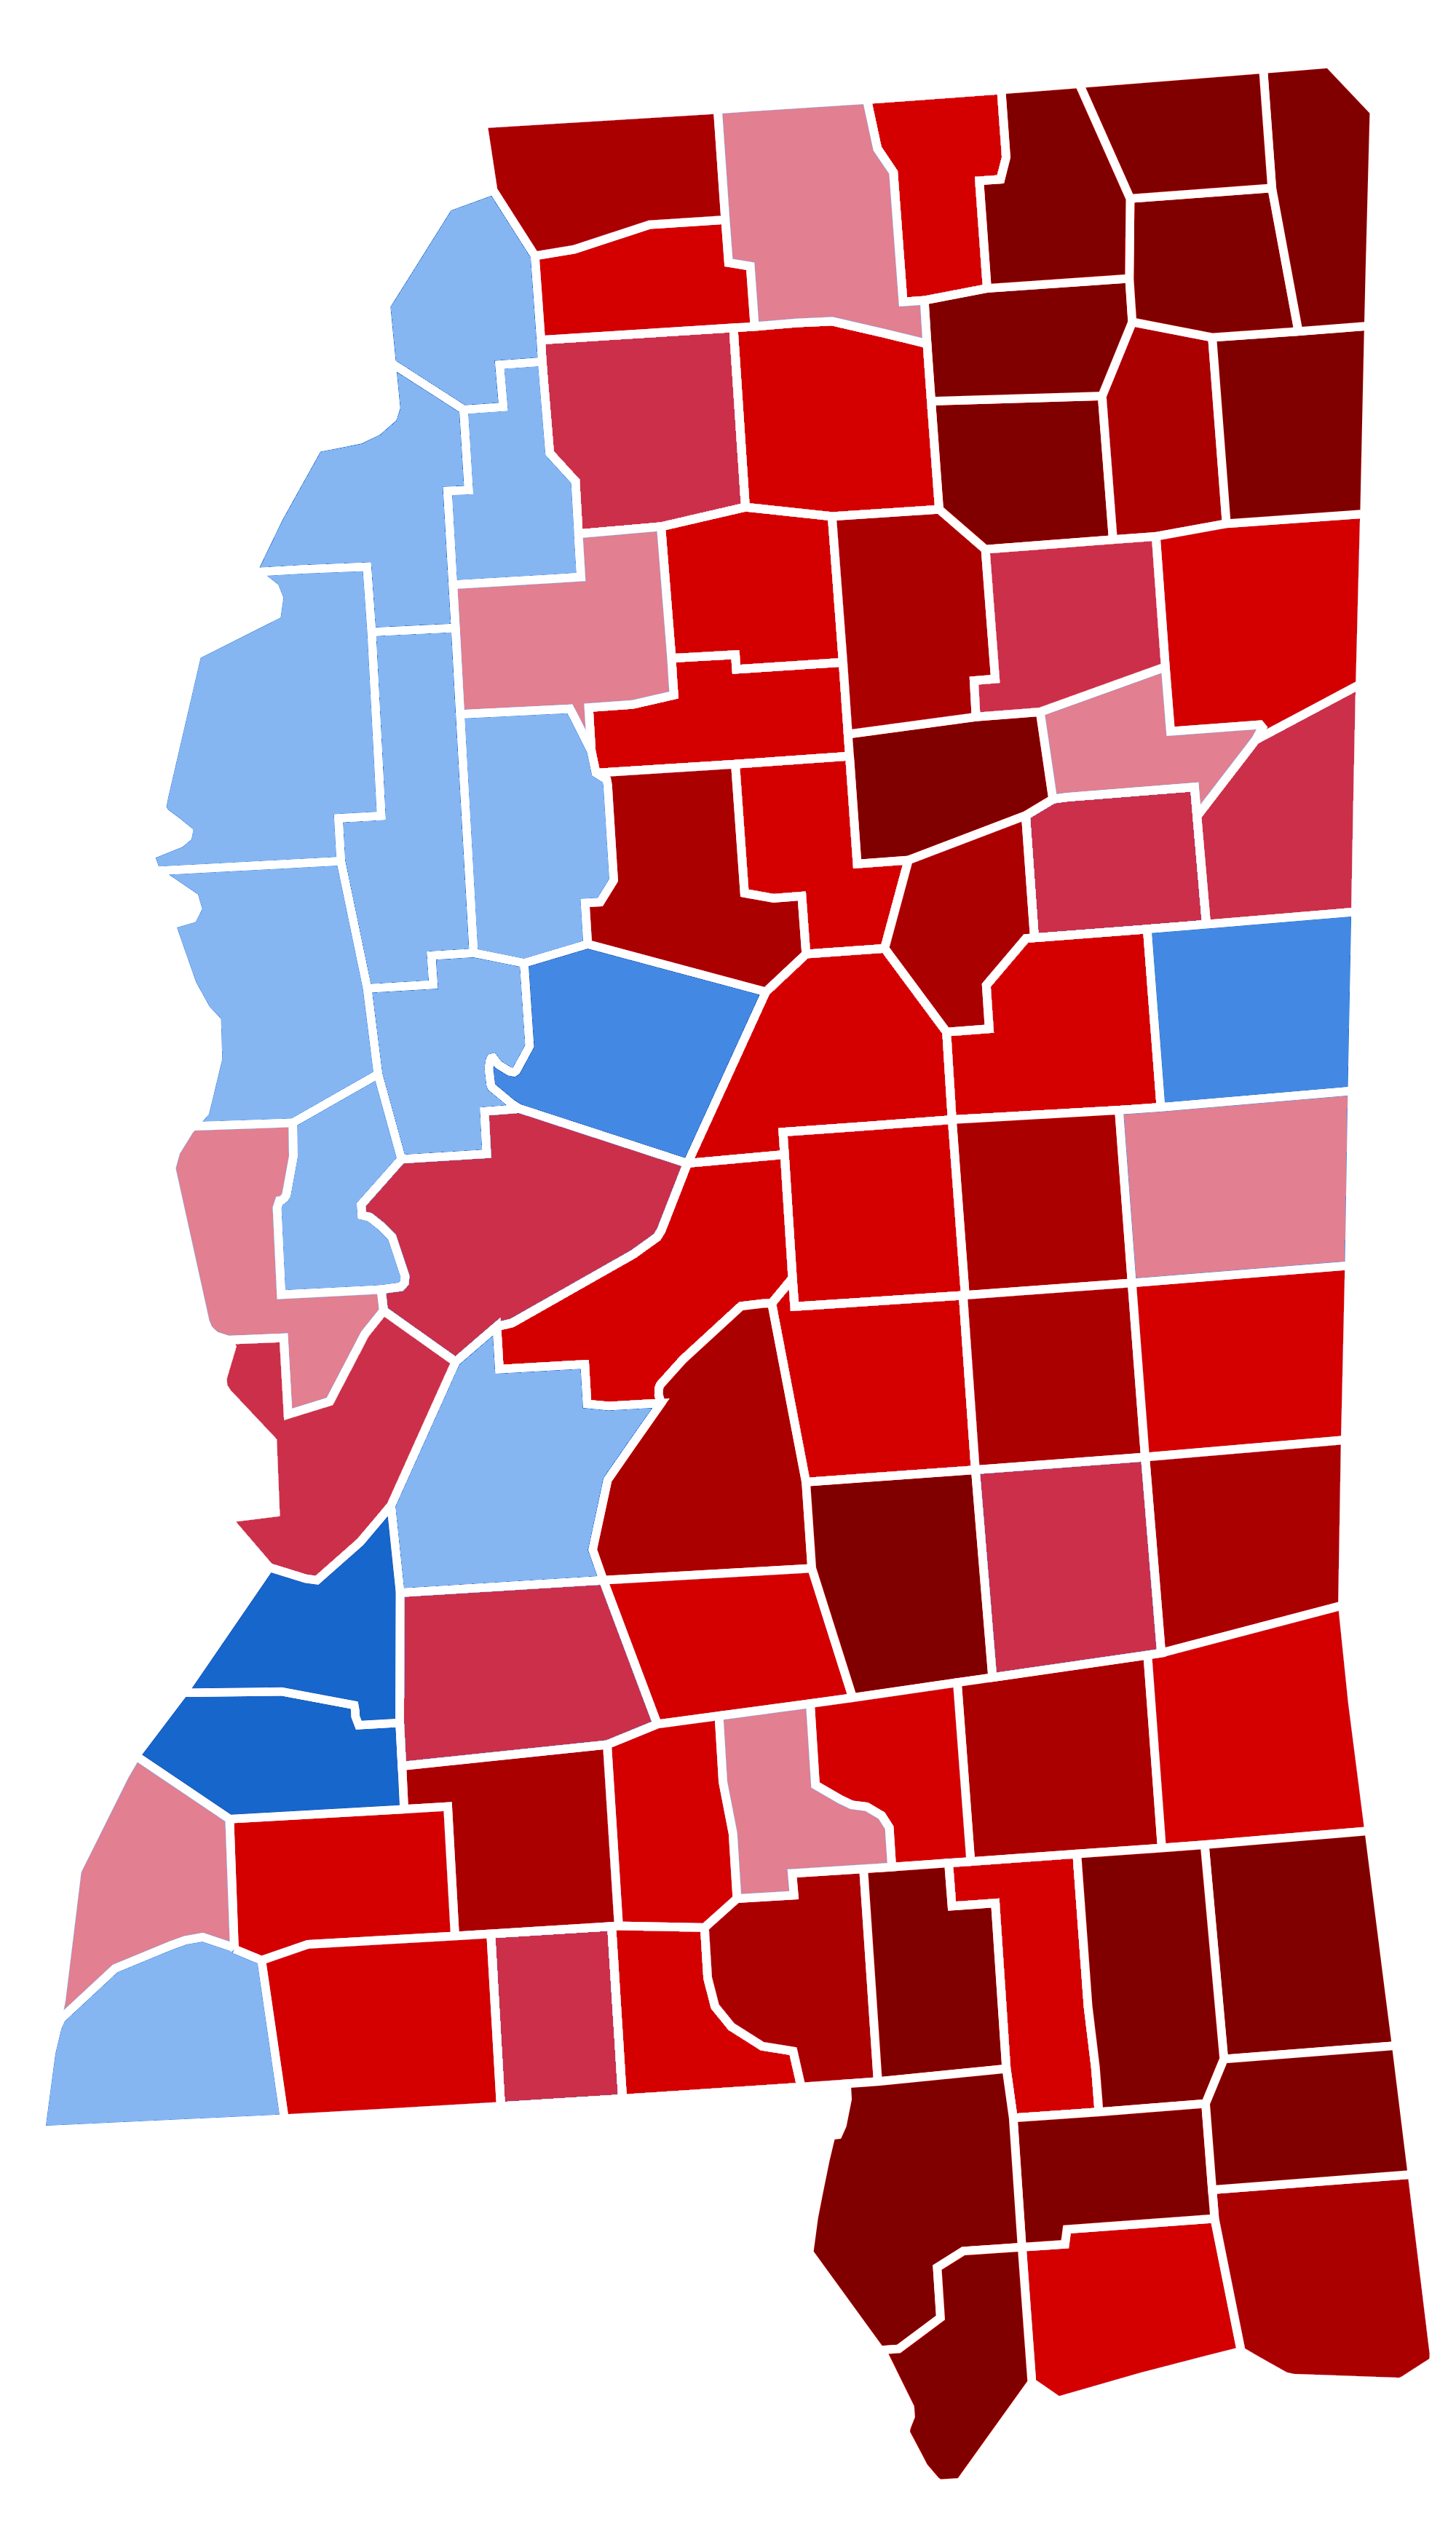 Mississippi_Presidential_Election_Results_2016_Republican_Landslide_15.06%.png